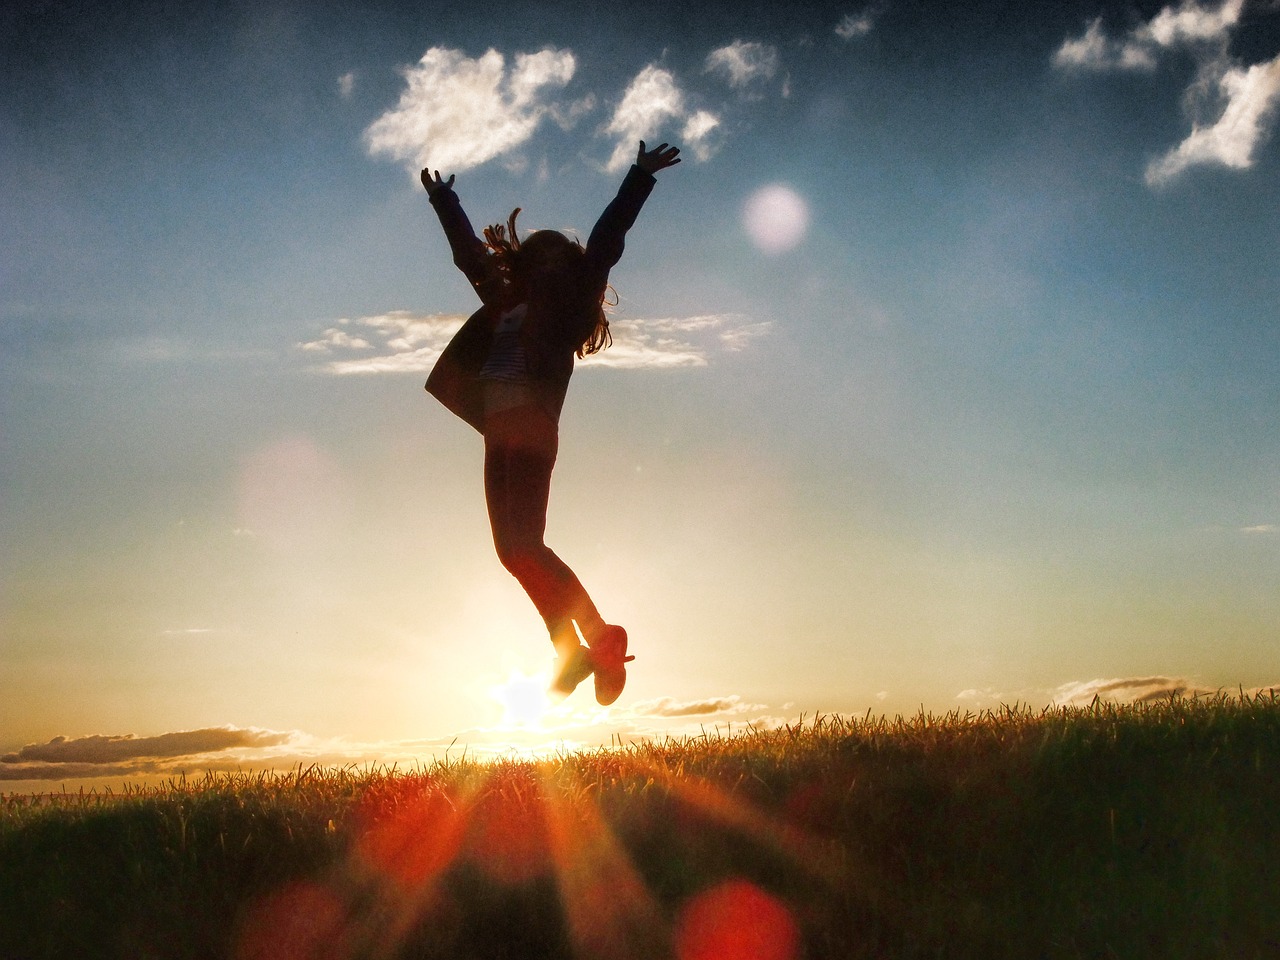 Mensch springt im Sonnenlicht in die Luft als Sinnbild für das Glück